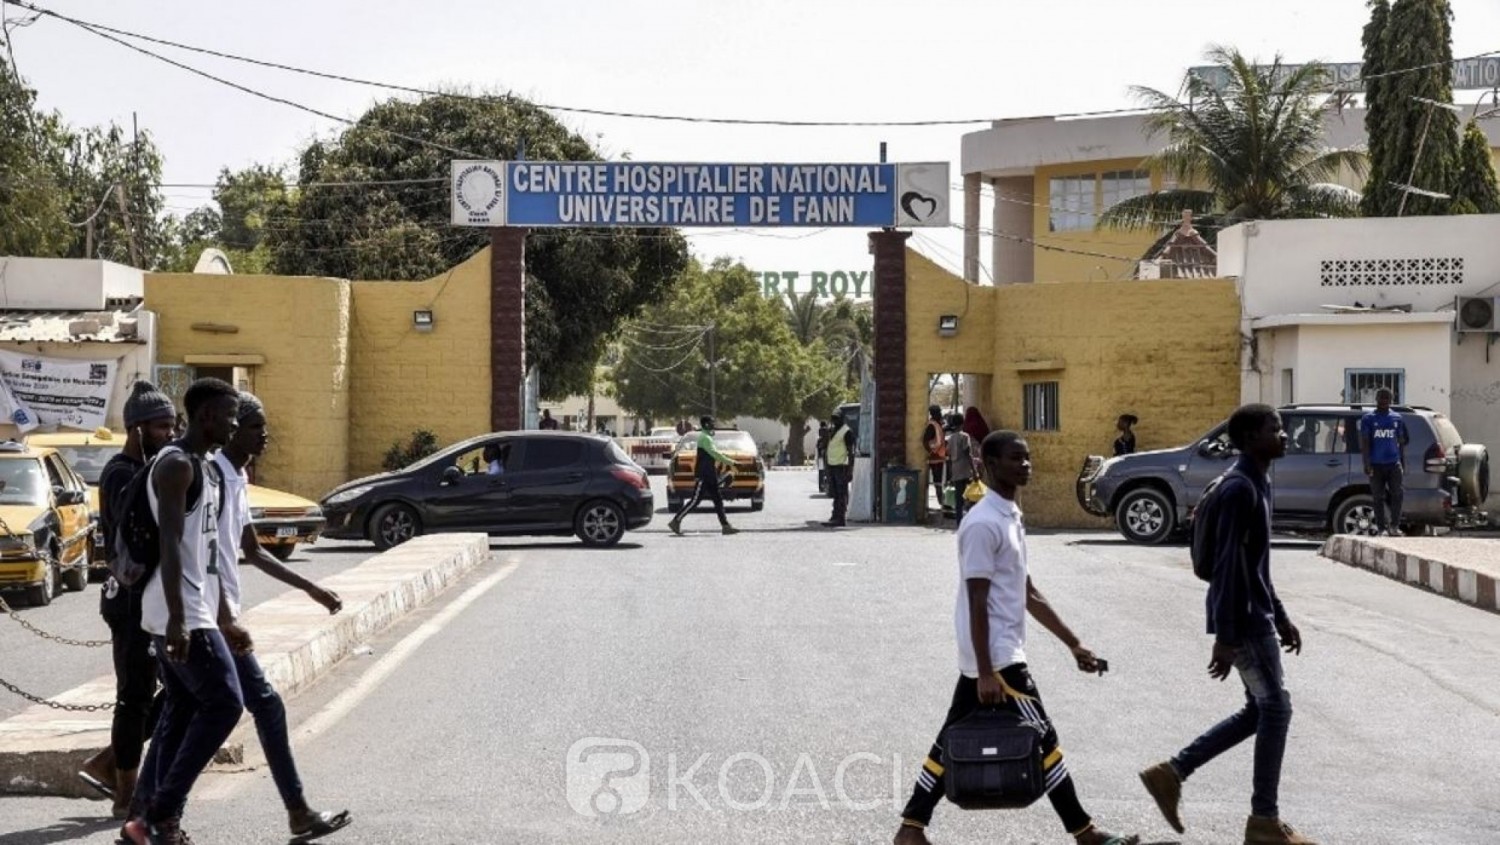 Sénégal : Coronavirus, les Sénégalais commencent à s'inquiéter alors que le pays compte 14 cas